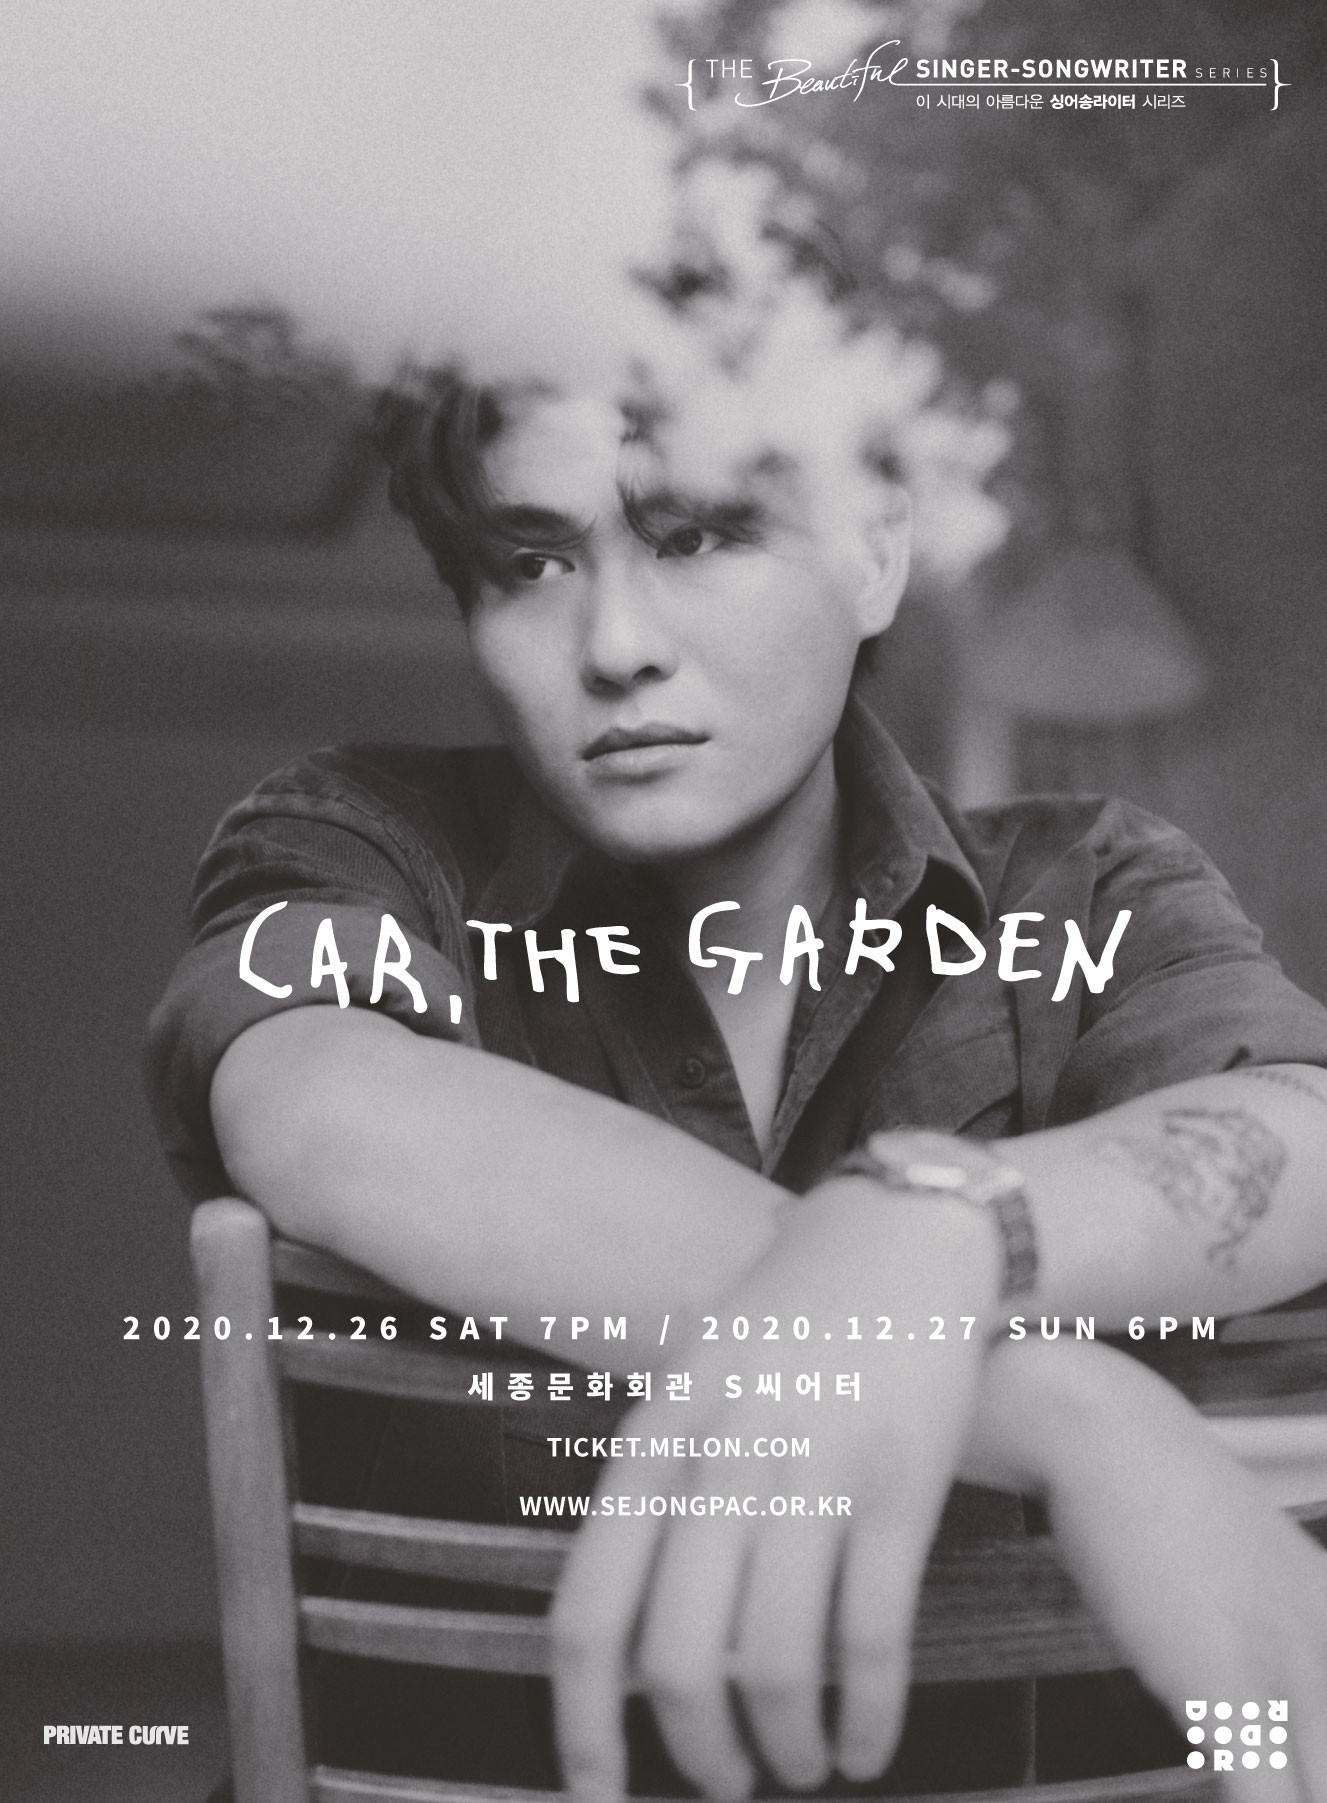 [공연안내] 카더가든(Car, the garden) 연말 공연 : 이 시대의 아름다운 싱어송라이터 시리즈